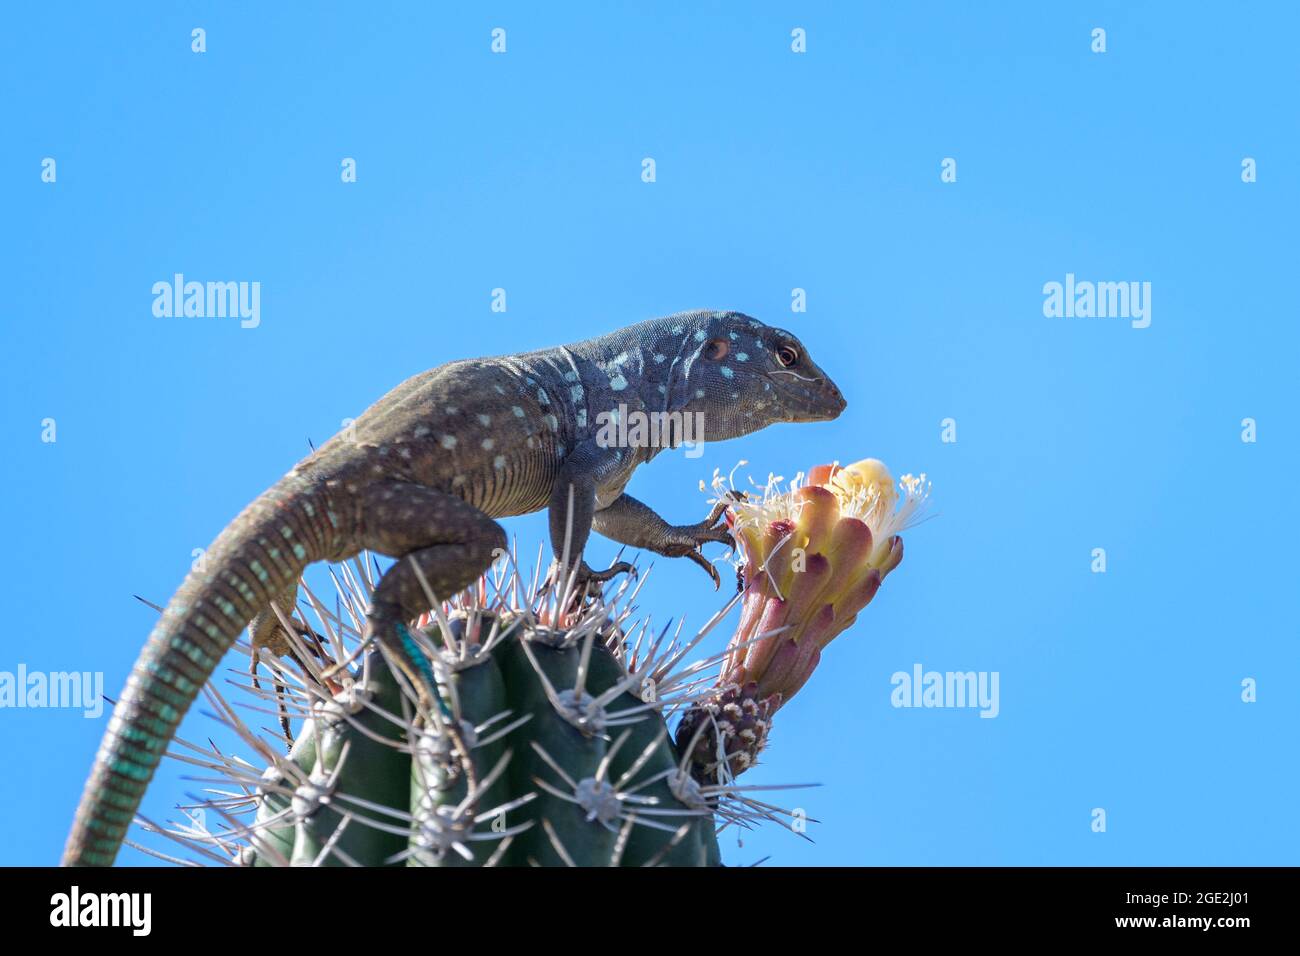 Lézard bleu à queue de cheval (Cnemidophorus murinus ruthveni) mangeant à partir d'une fleur au-dessus du cactus, parc national de Washington Slagbaai, Bonaire, Caribbe hollandais Banque D'Images